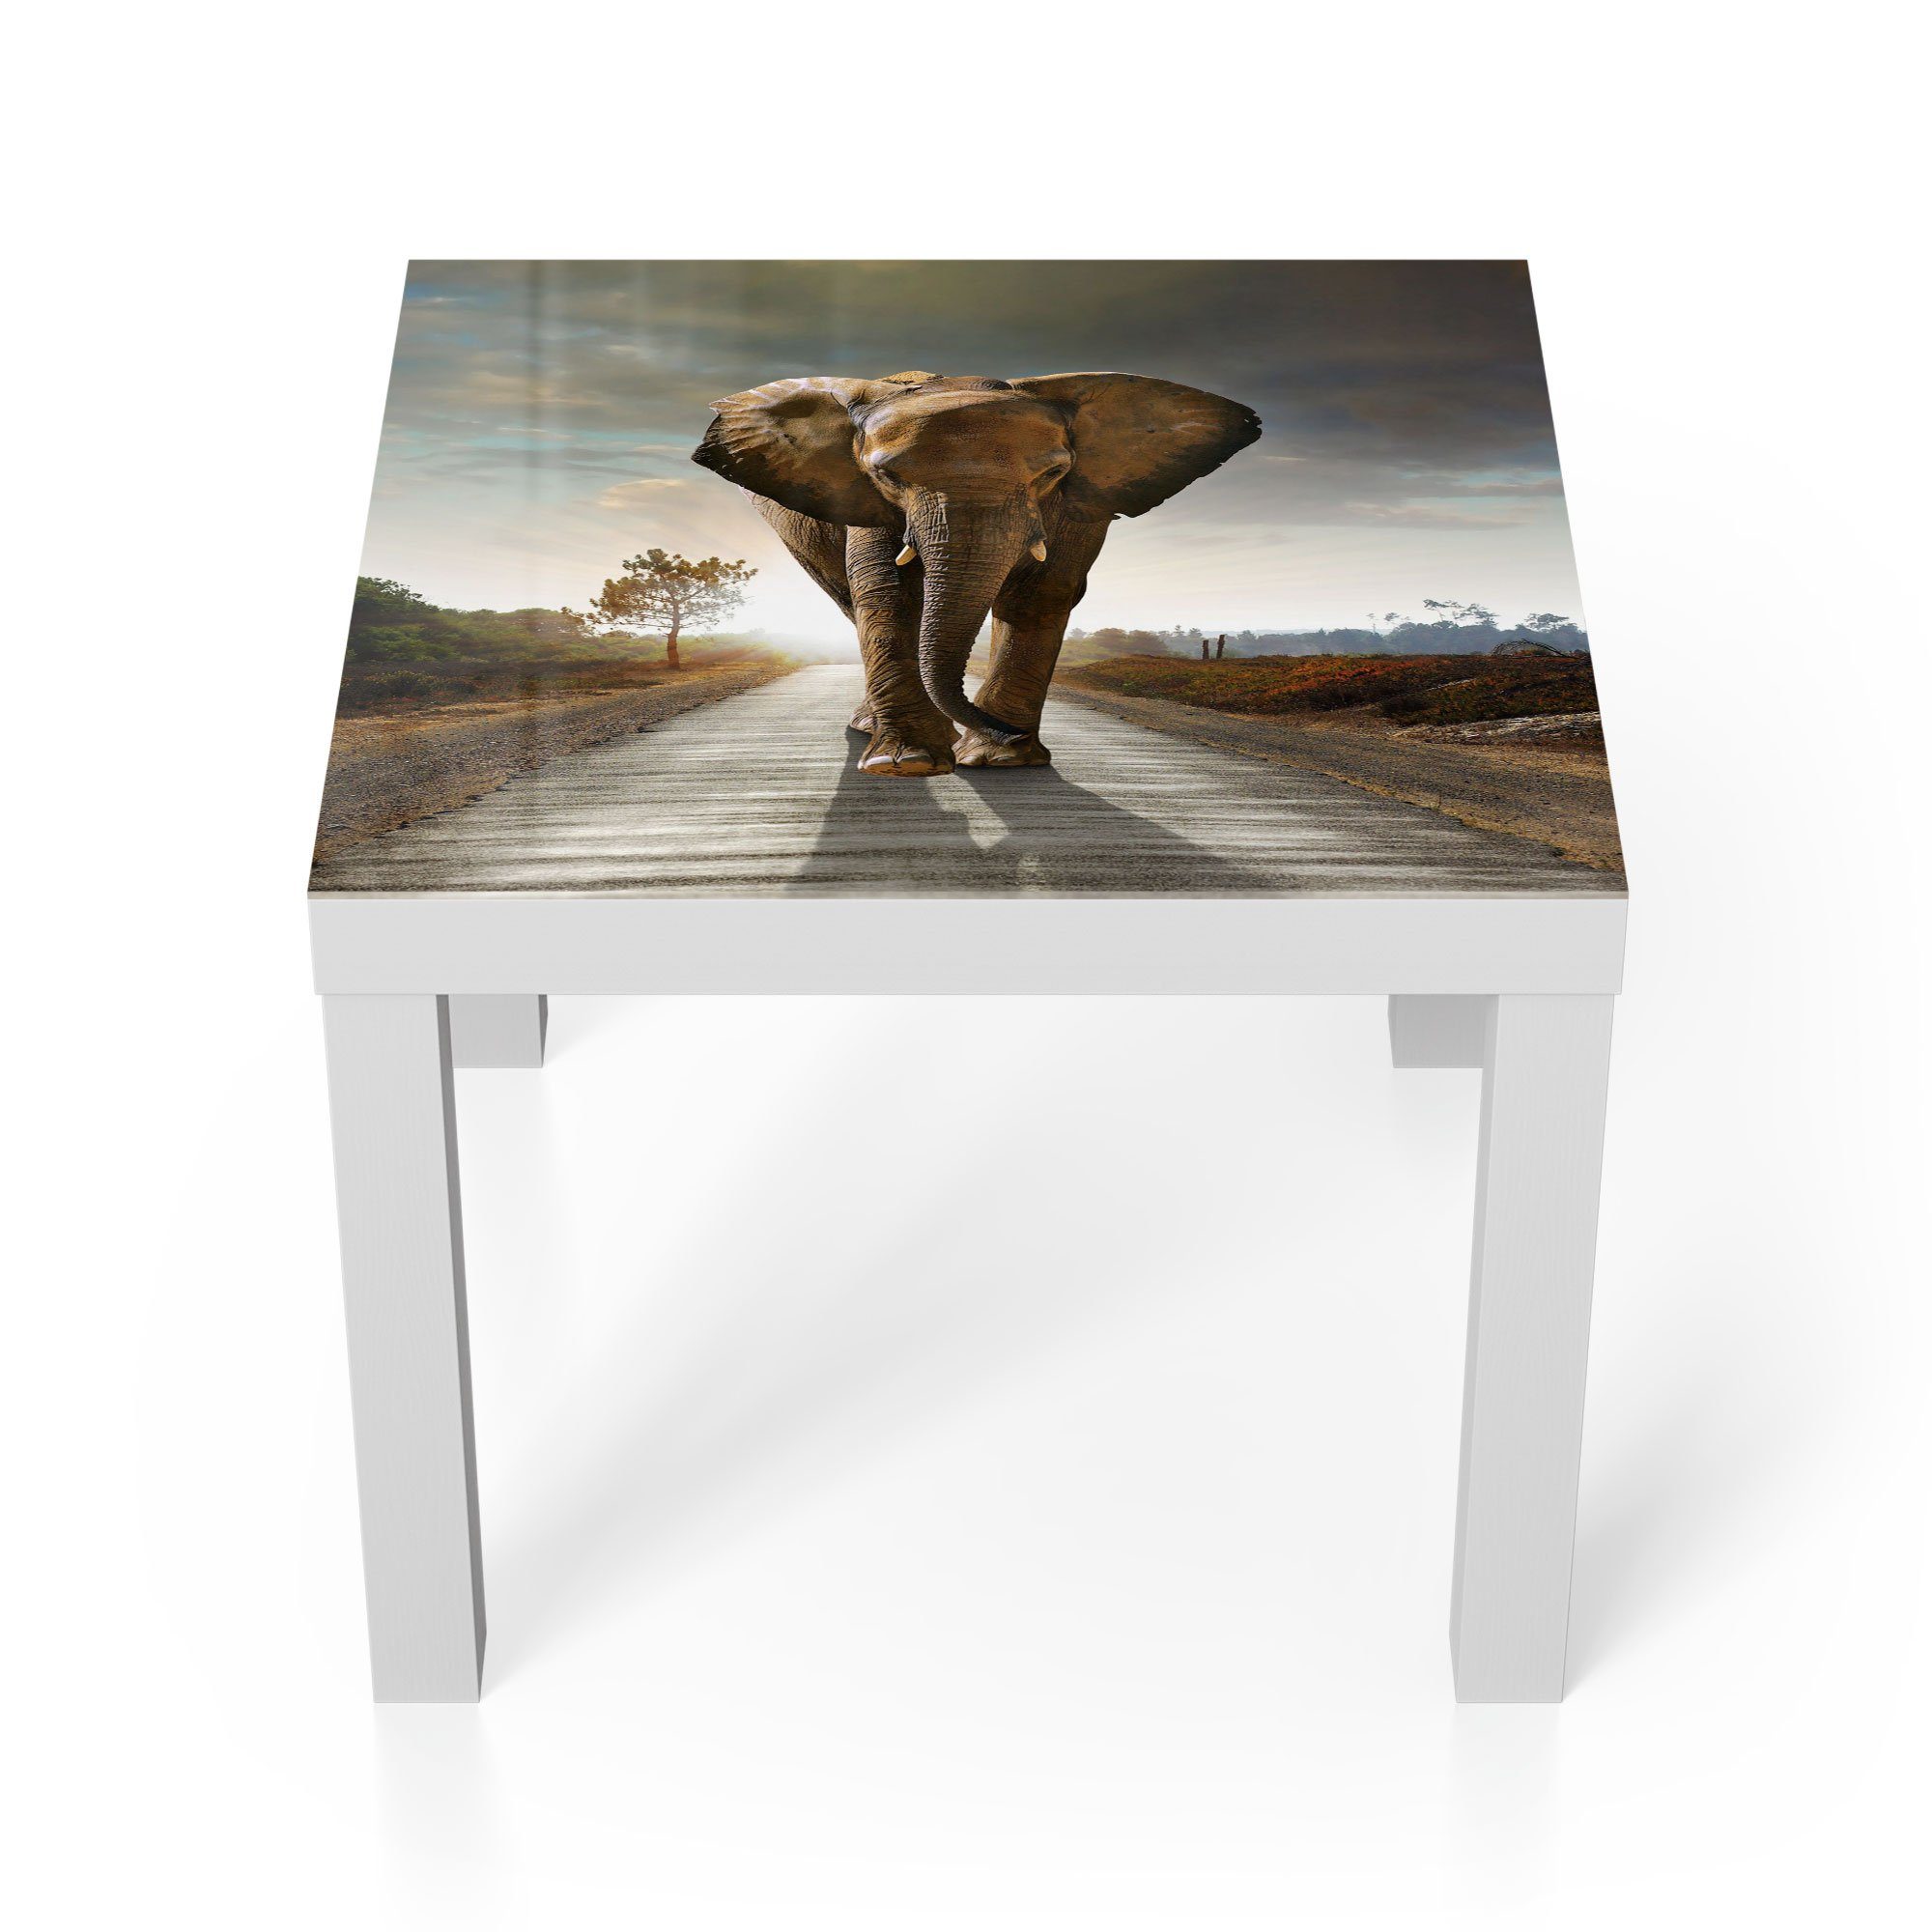 DEQORI Couchtisch 'Elefant auf Asphalt', Glas Beistelltisch Glastisch modern Weiß